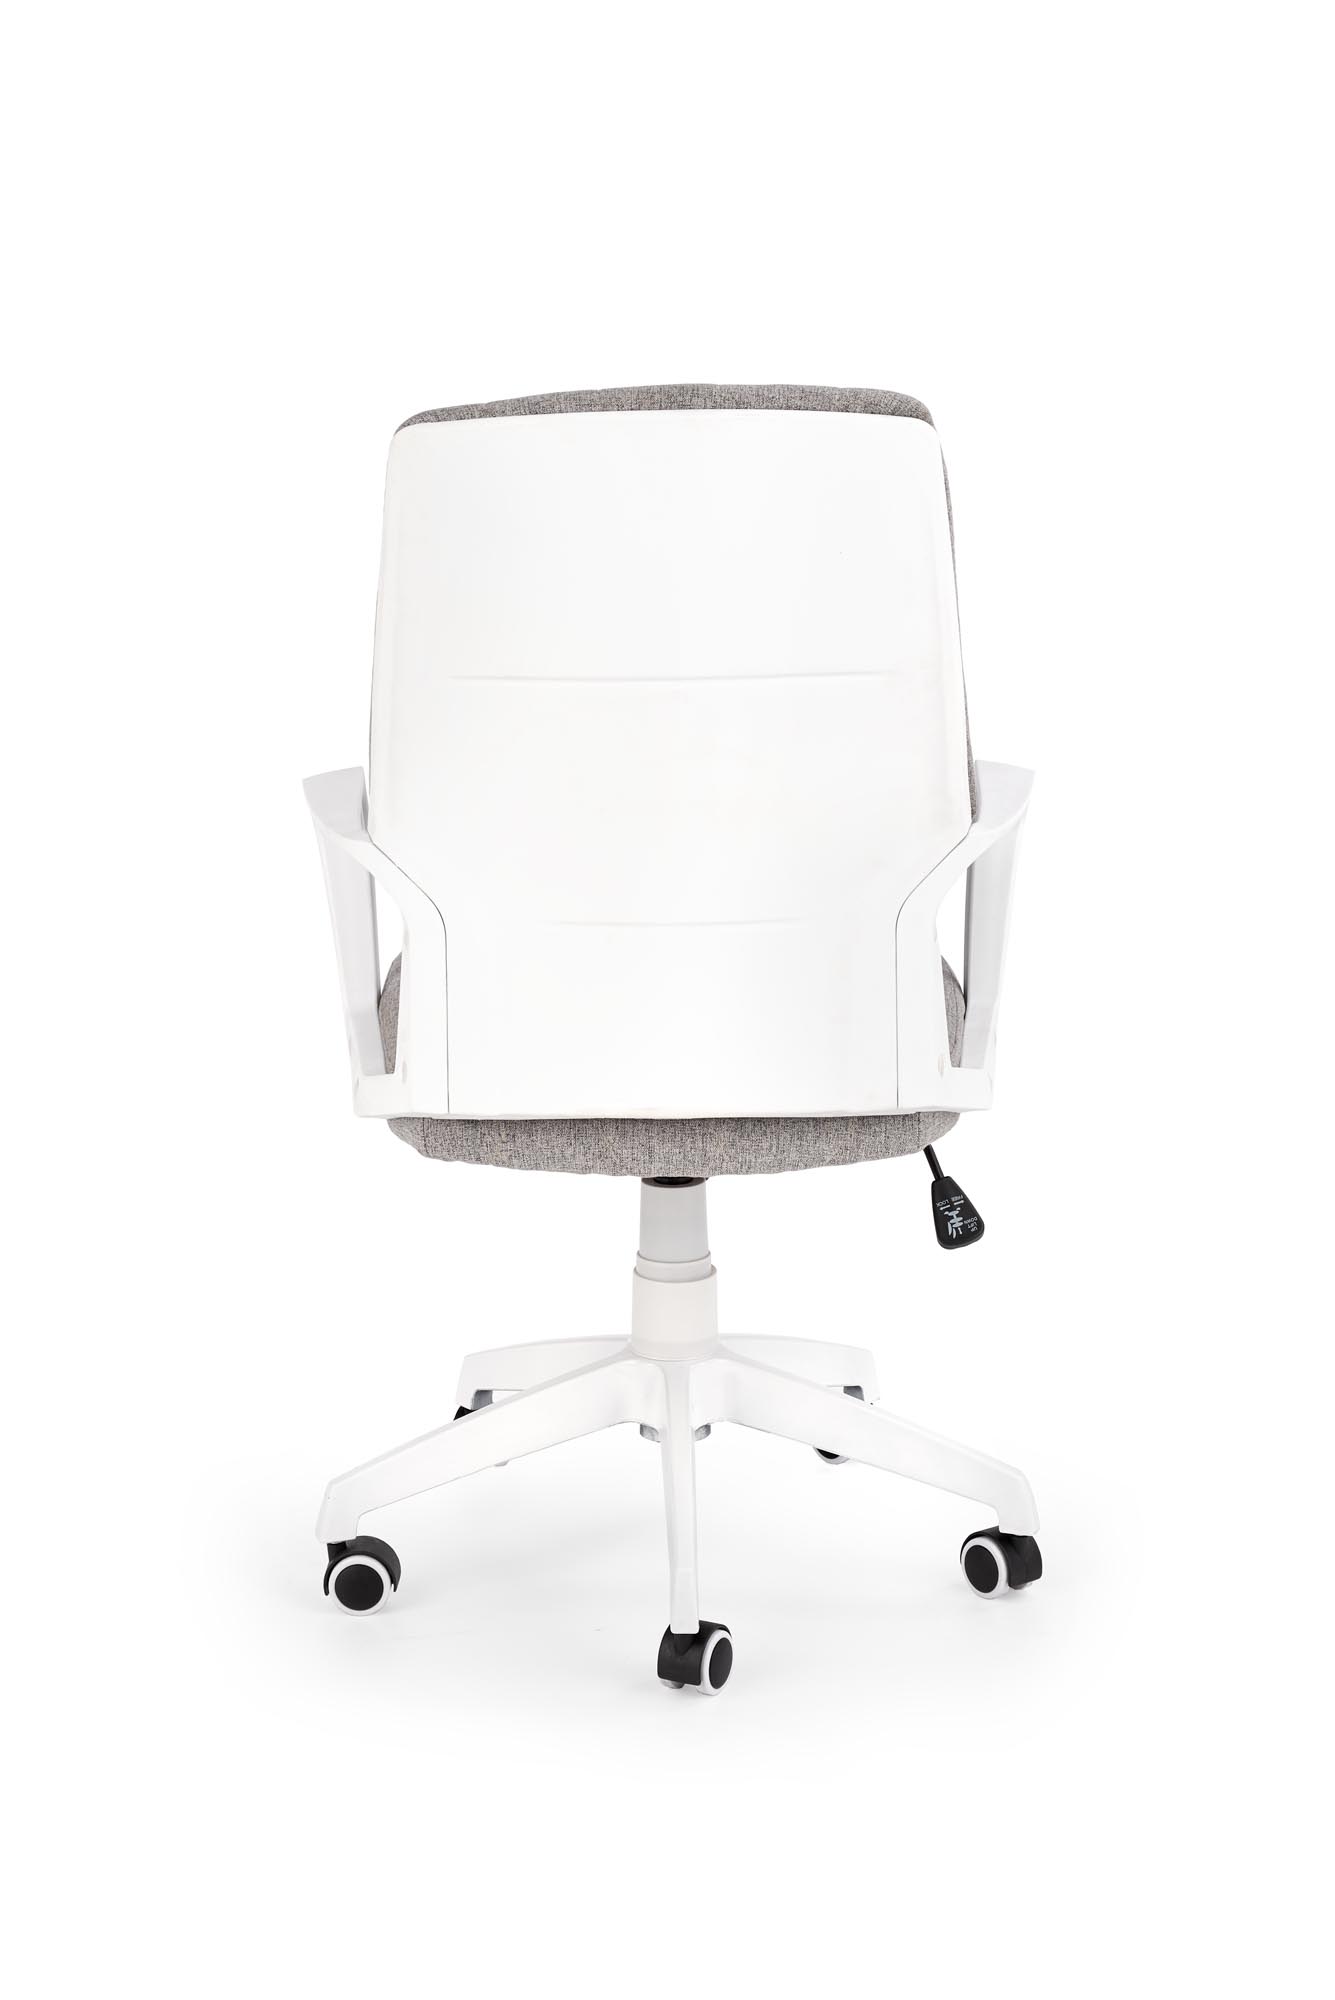 Nowoczesny fotel biurowy Spin 2 - beż / biały fotel biurowy